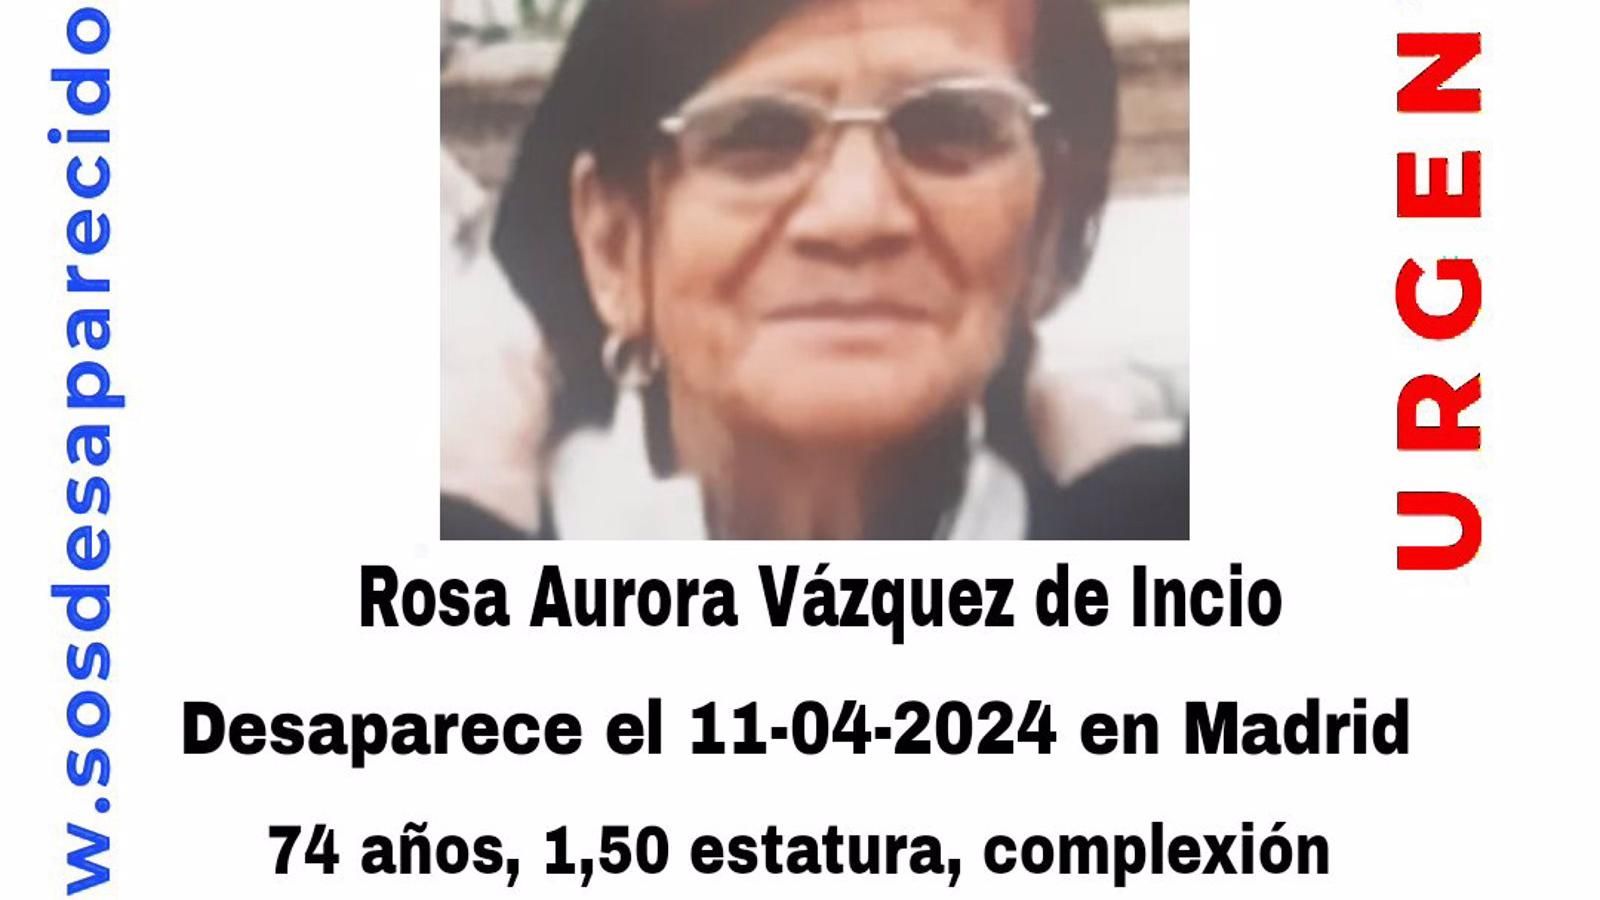 Buscan a una mujer de 74 años desaparecida en Madrid y catalogada como "persona vulnerable"